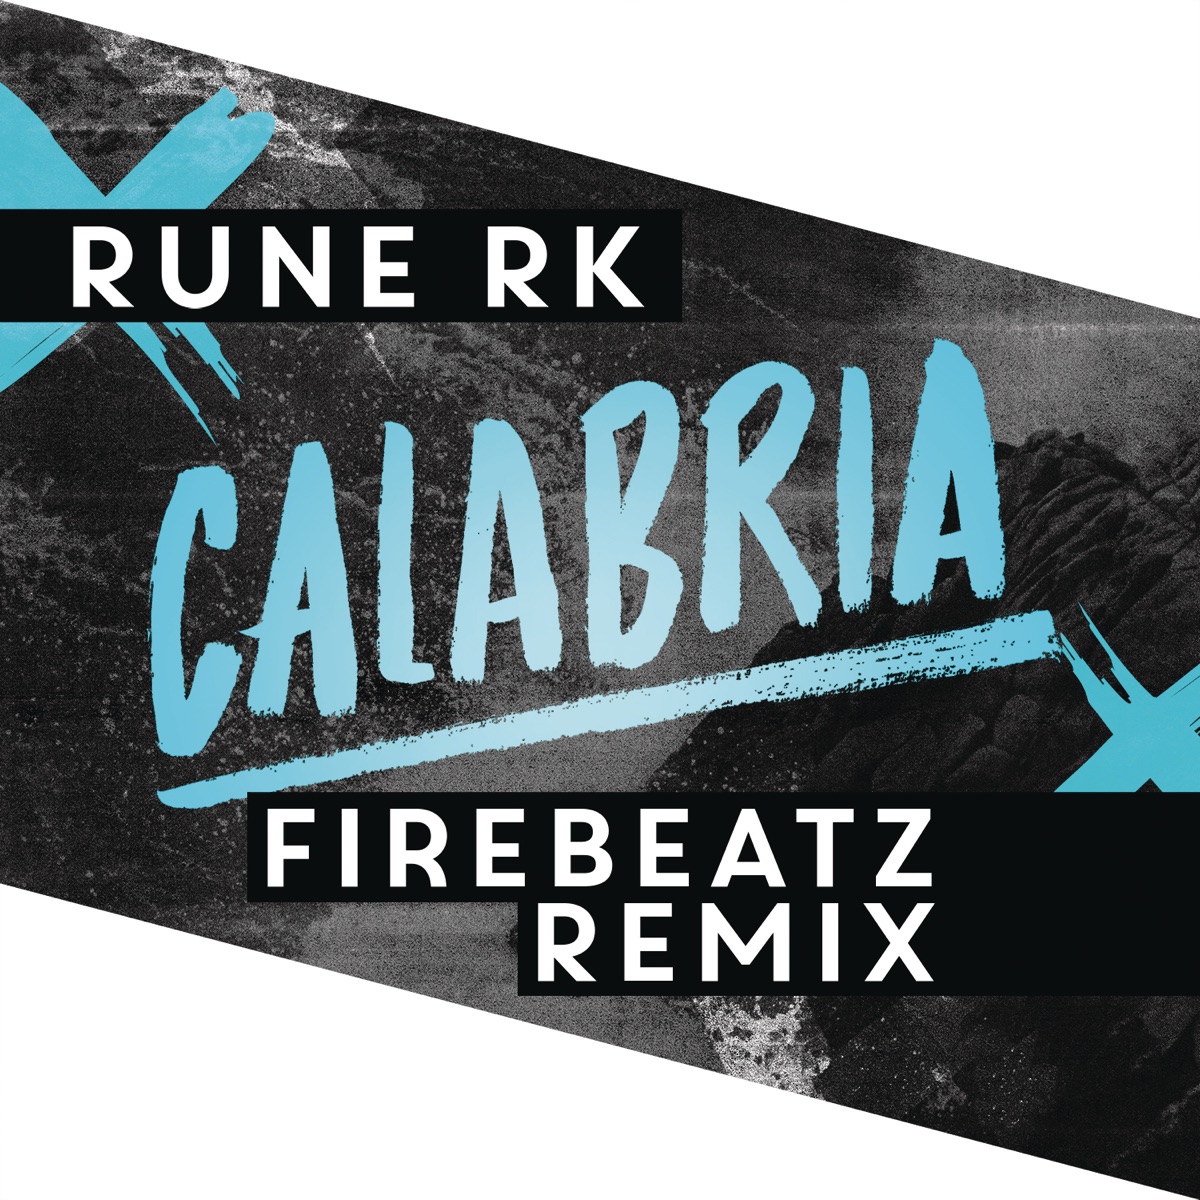 Rune RK & Firebeatz — Calabria (Firebeatz Remix) cover artwork